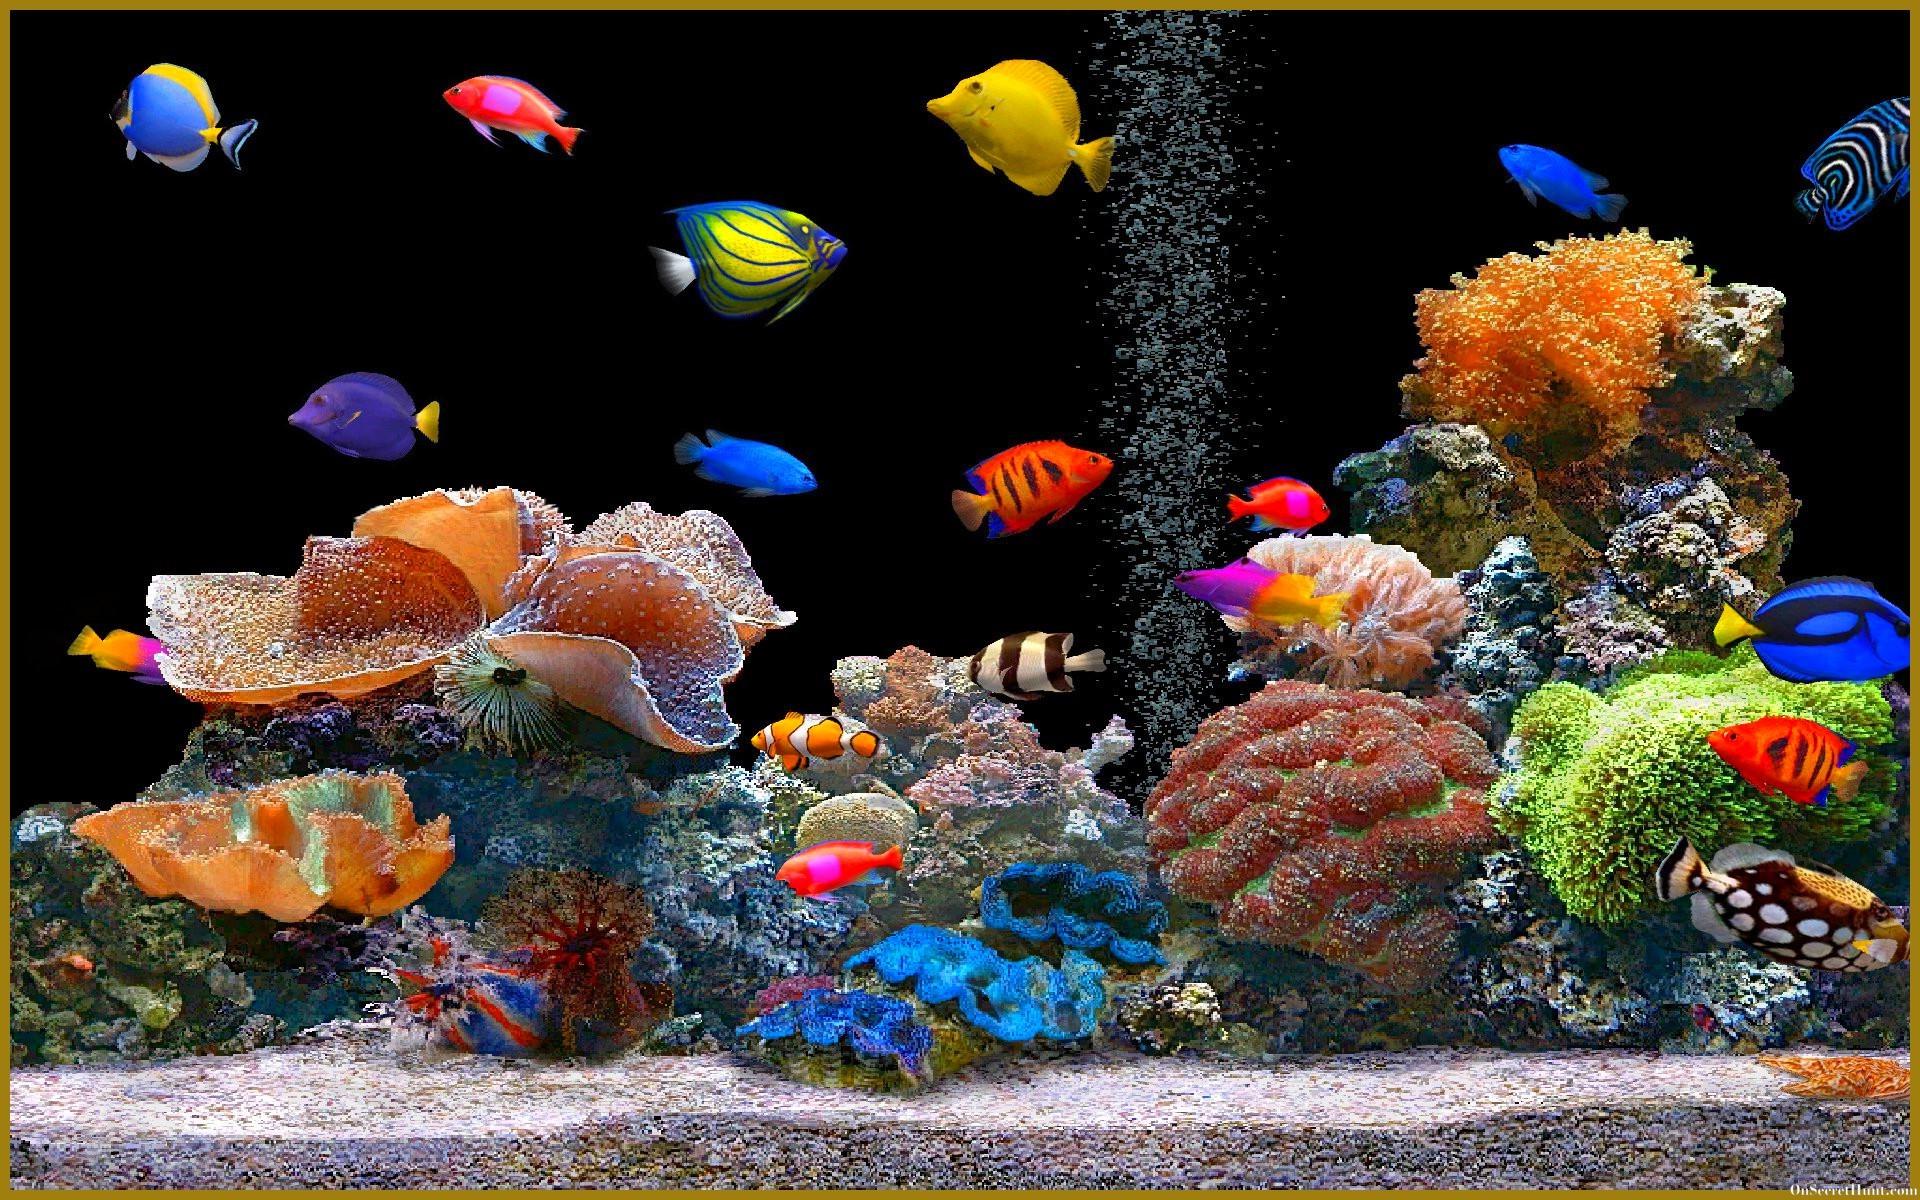 Aquarium Background, Wallpaper, Image, Picture Design Trends